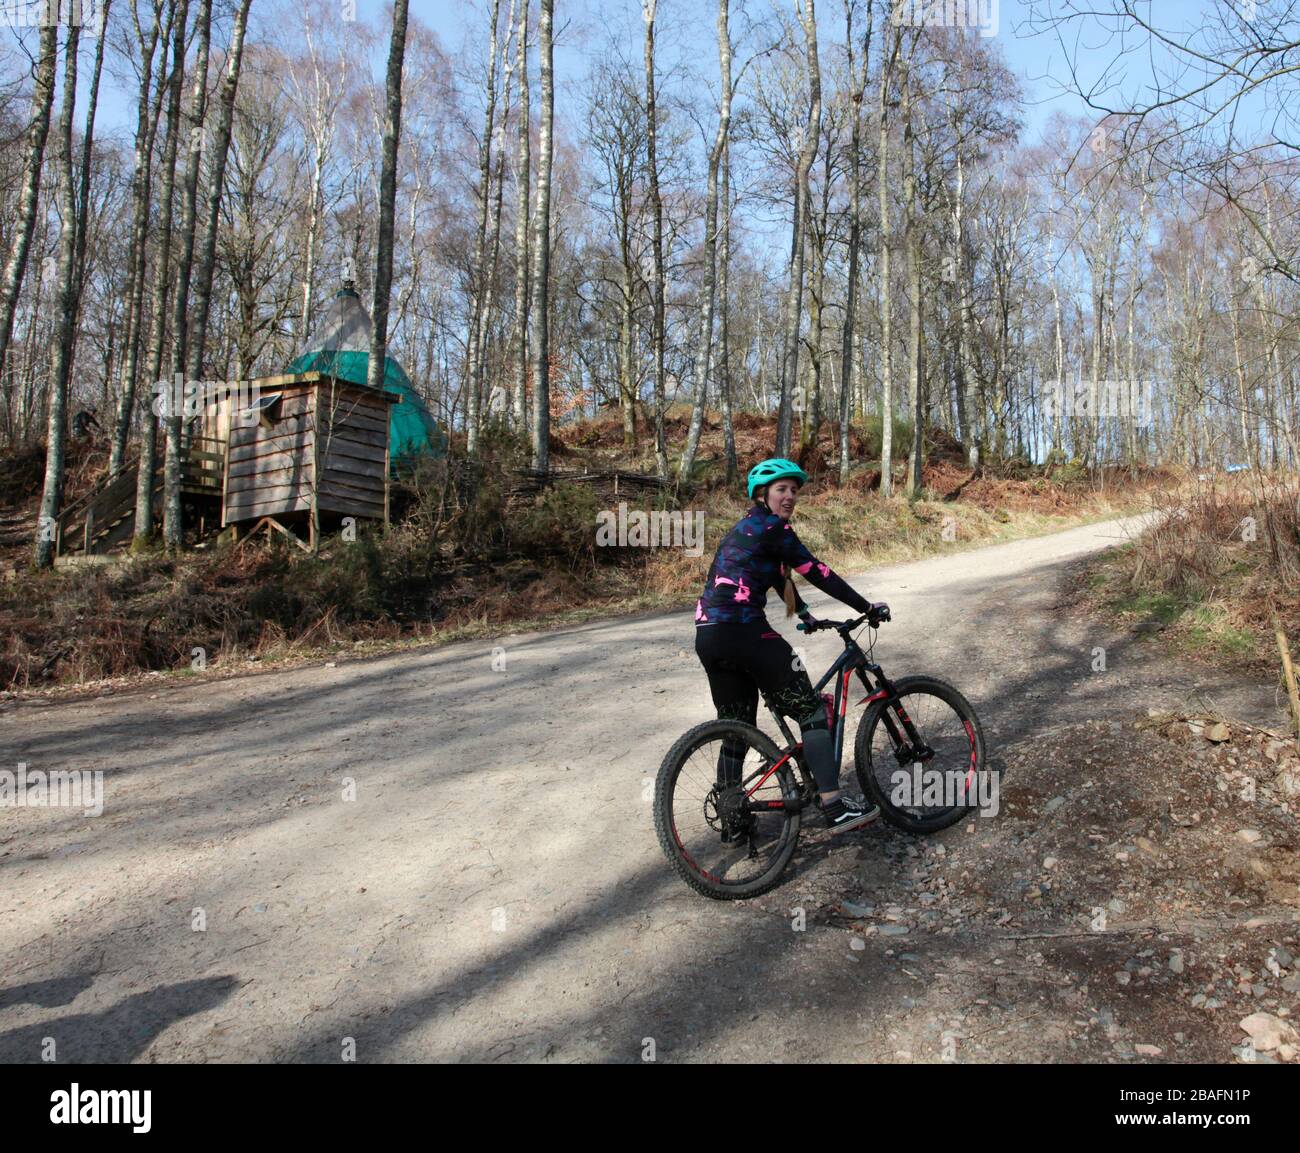 Una joven se detuvo en el sendero de la bicicleta de montaña Foto de stock